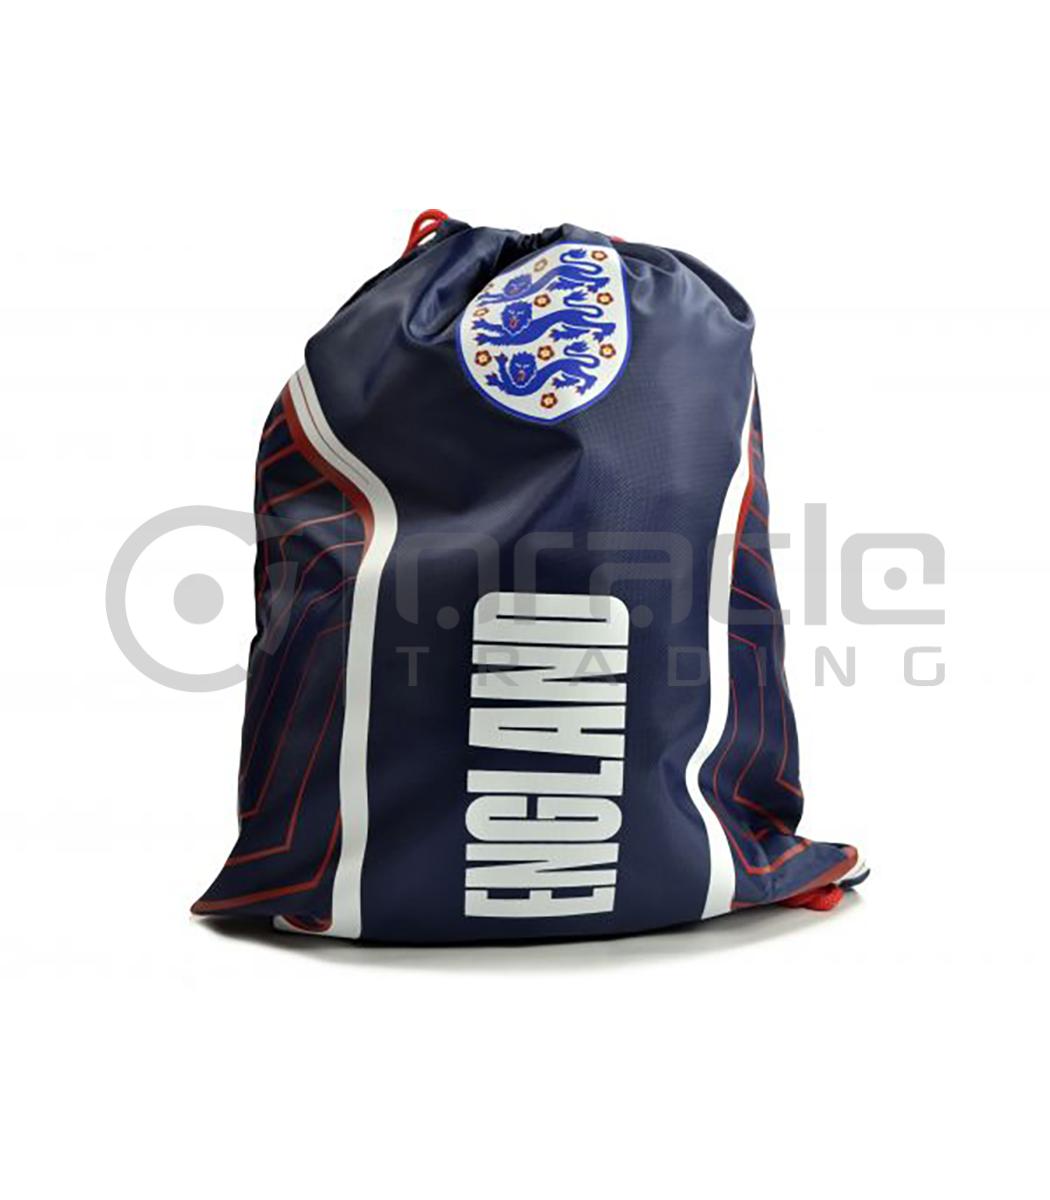 England FA Gym Bag